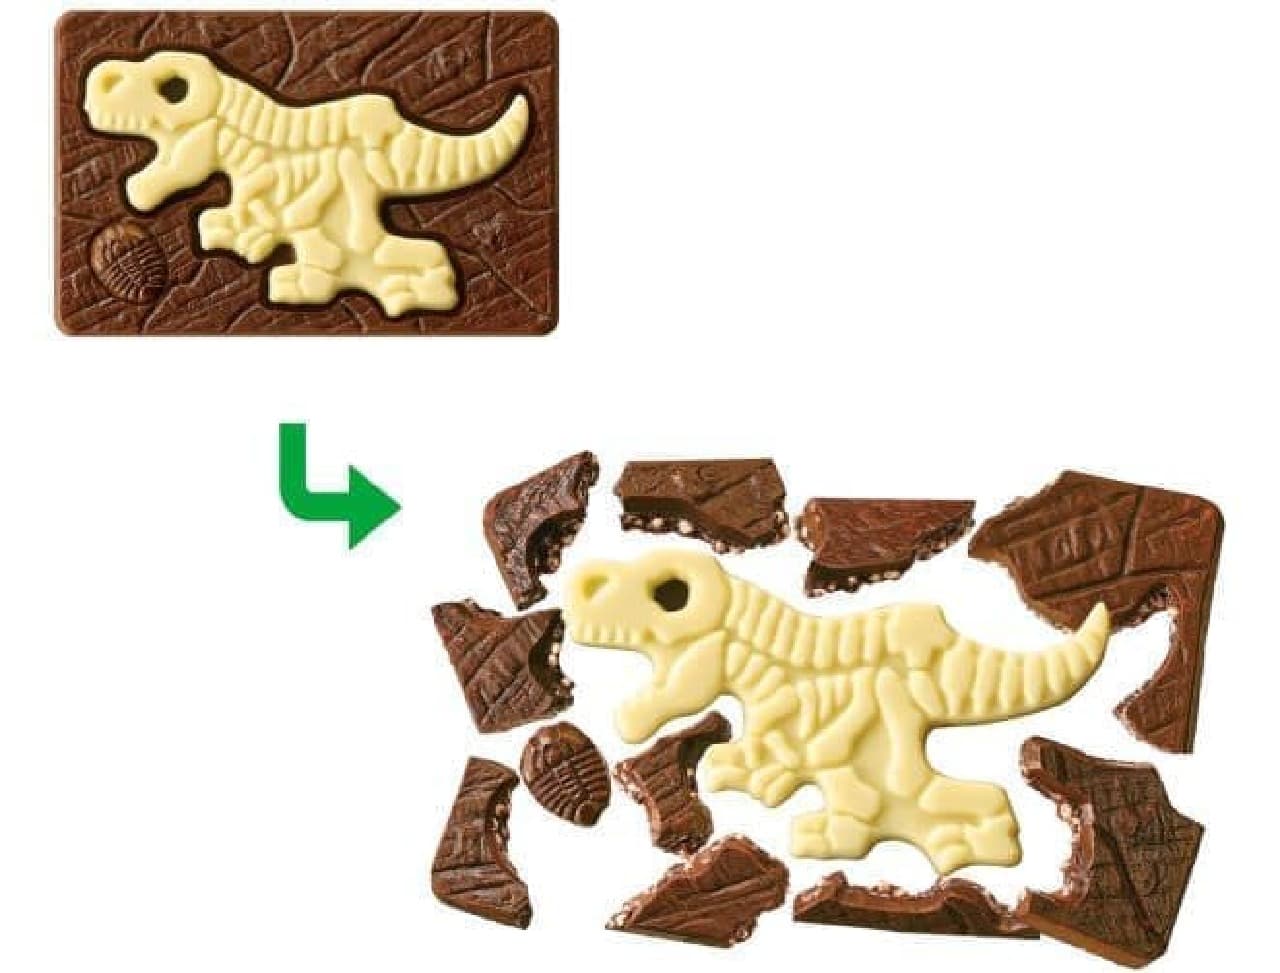 型抜き板チョコ キャラパキ 発掘恐竜 でパキッと発掘 三葉虫やアンモナイトも えん食べ